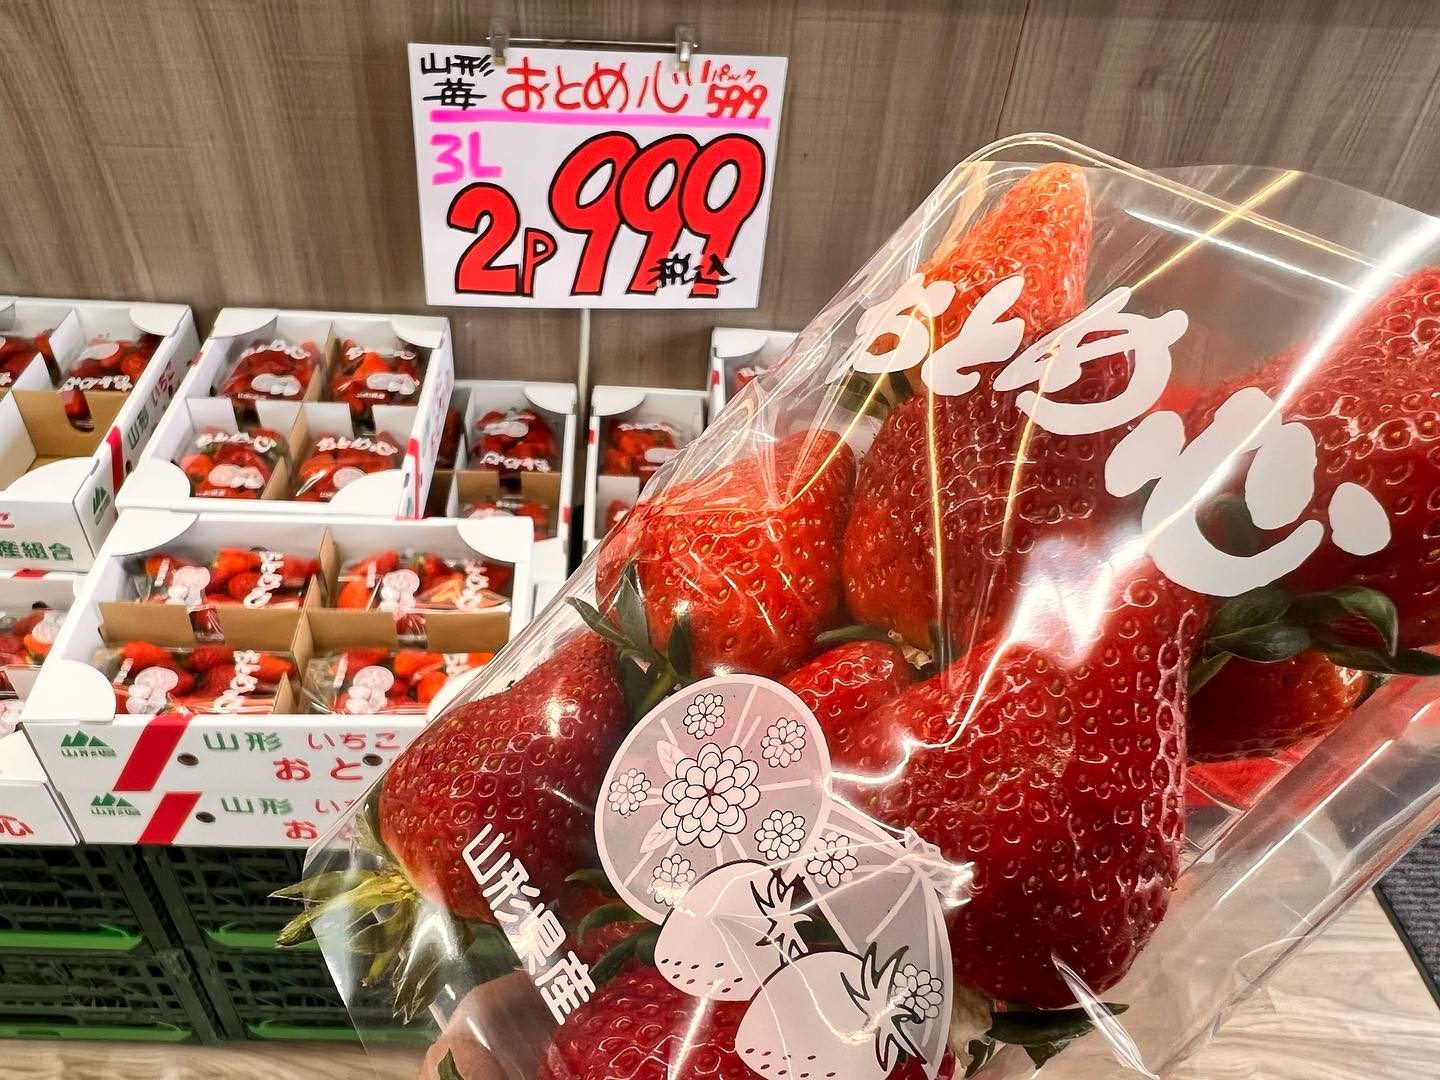 山形イチゴ
『おとめこころ』
大粒3Lサイズ
2パック999円